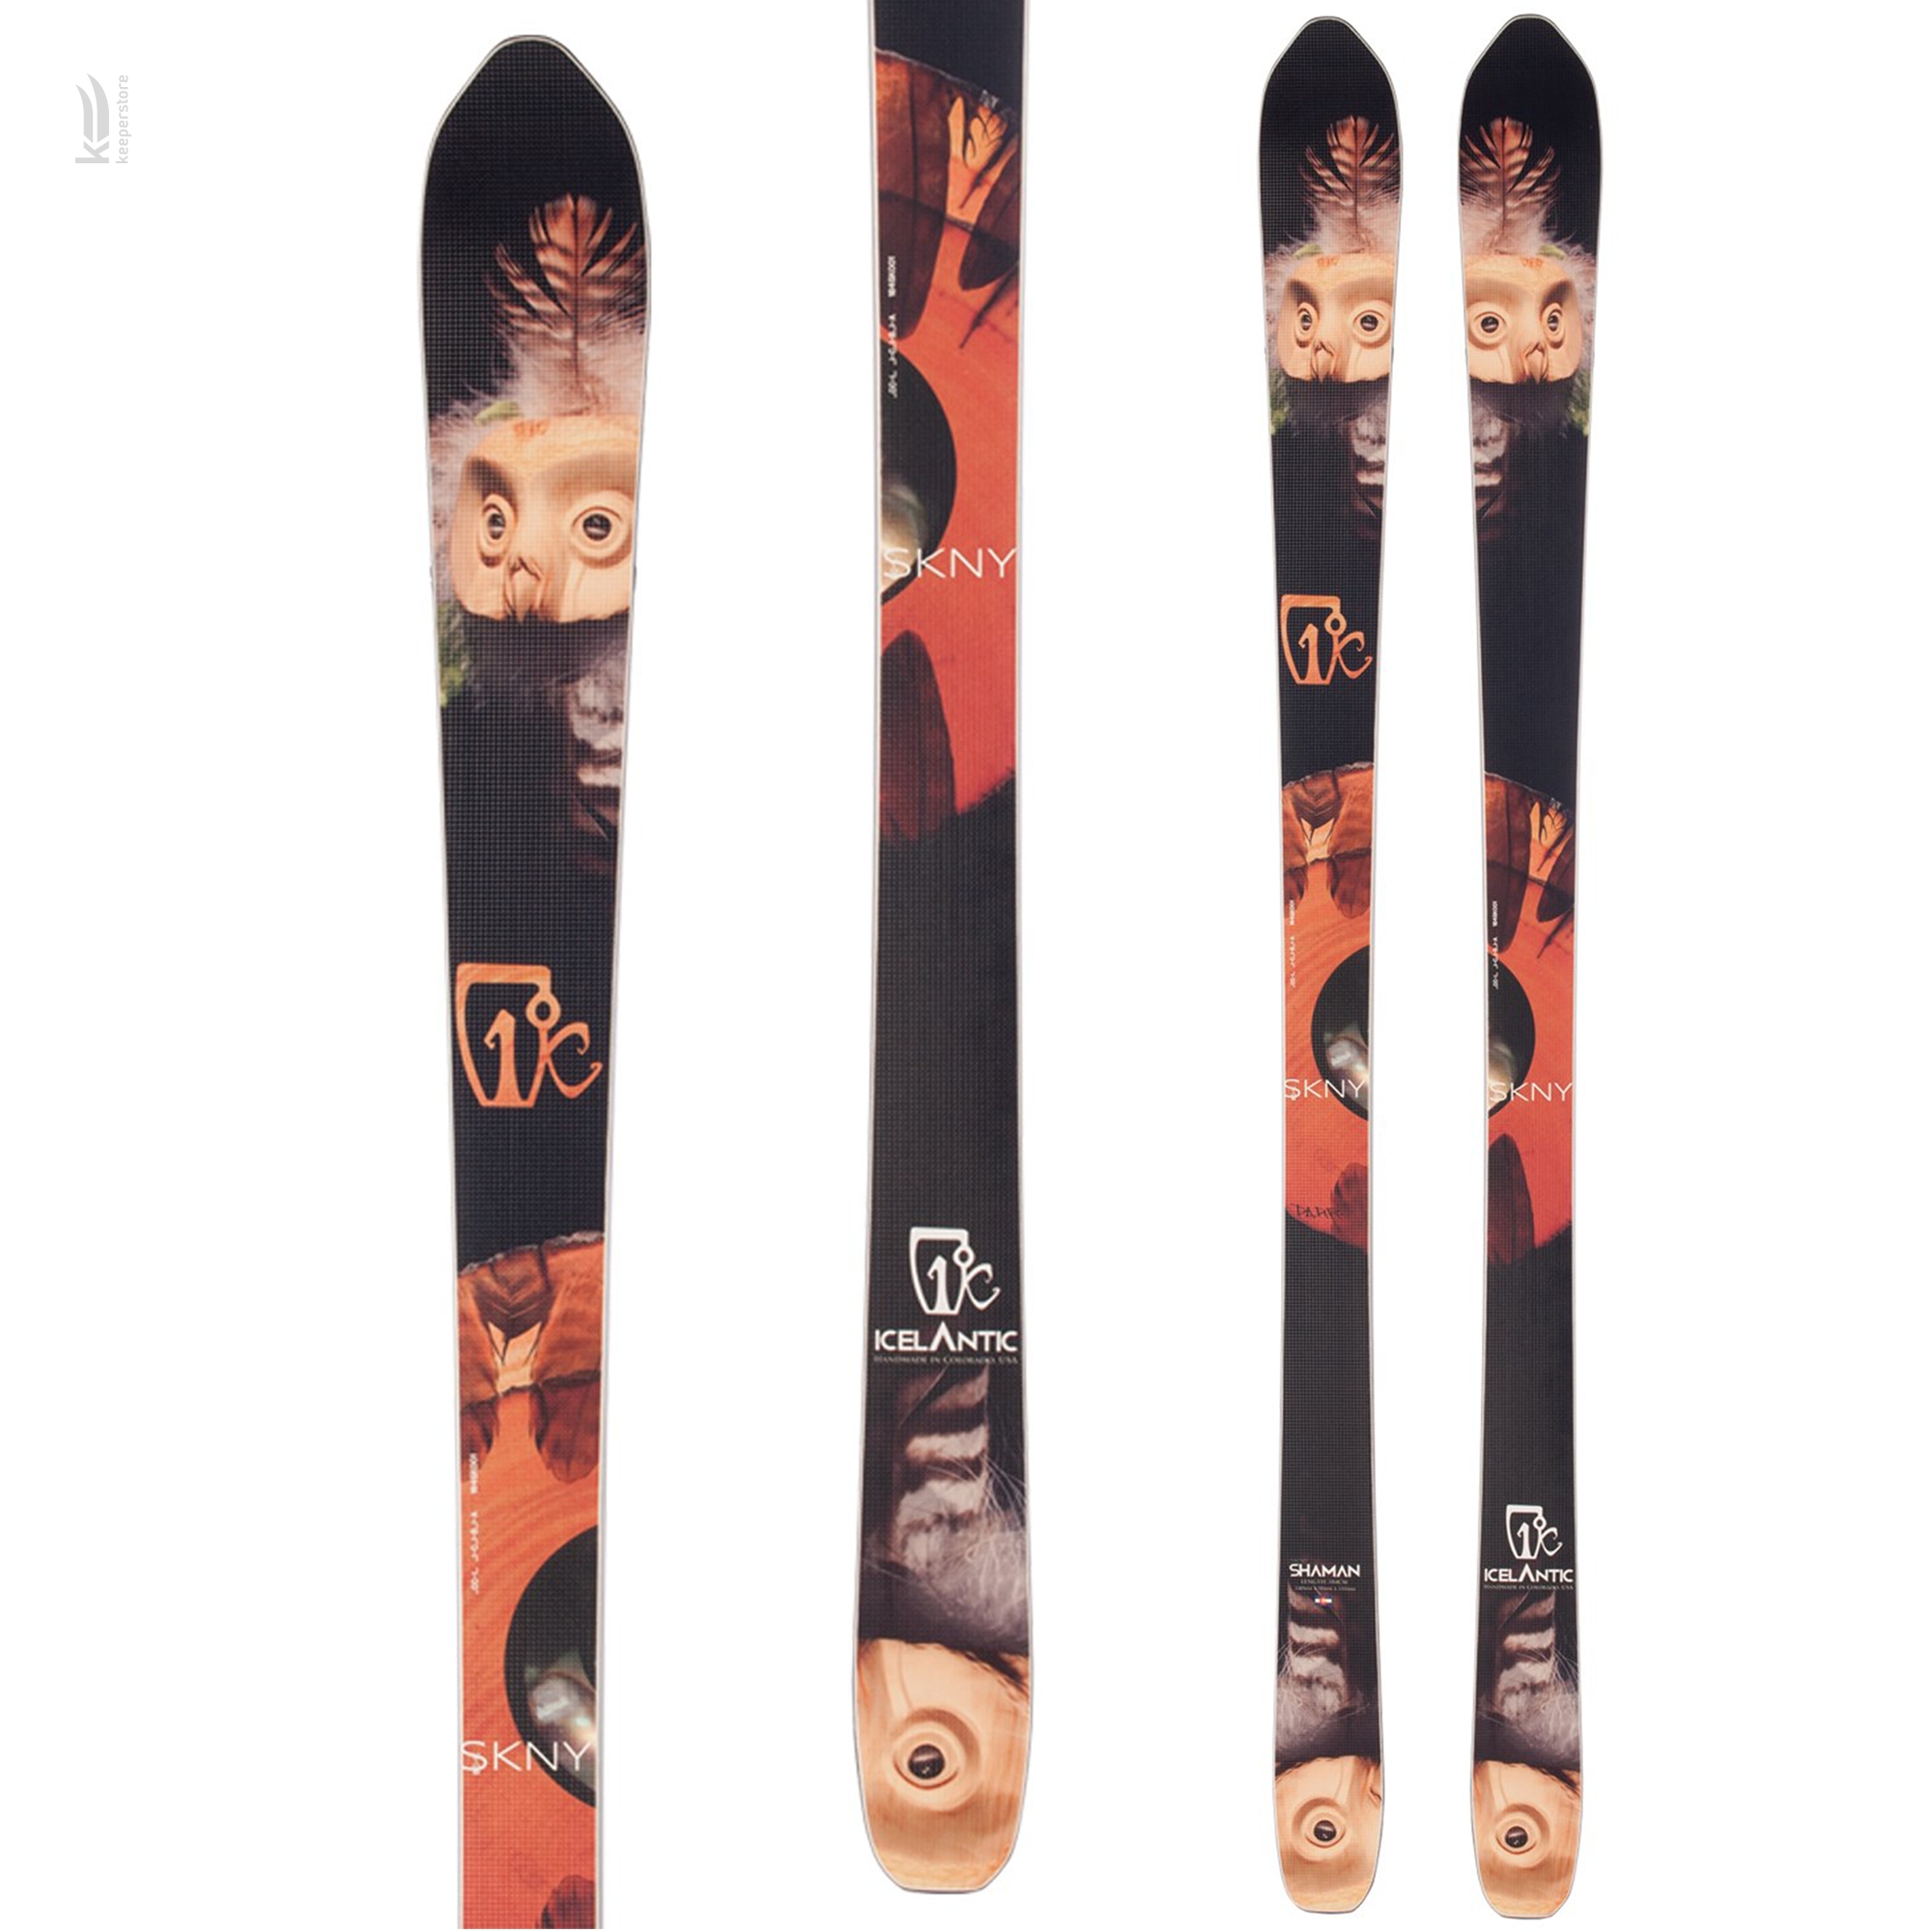 Лыжи для подготовленного склона Icelantic Shaman SKNY 2013/2014 173cm